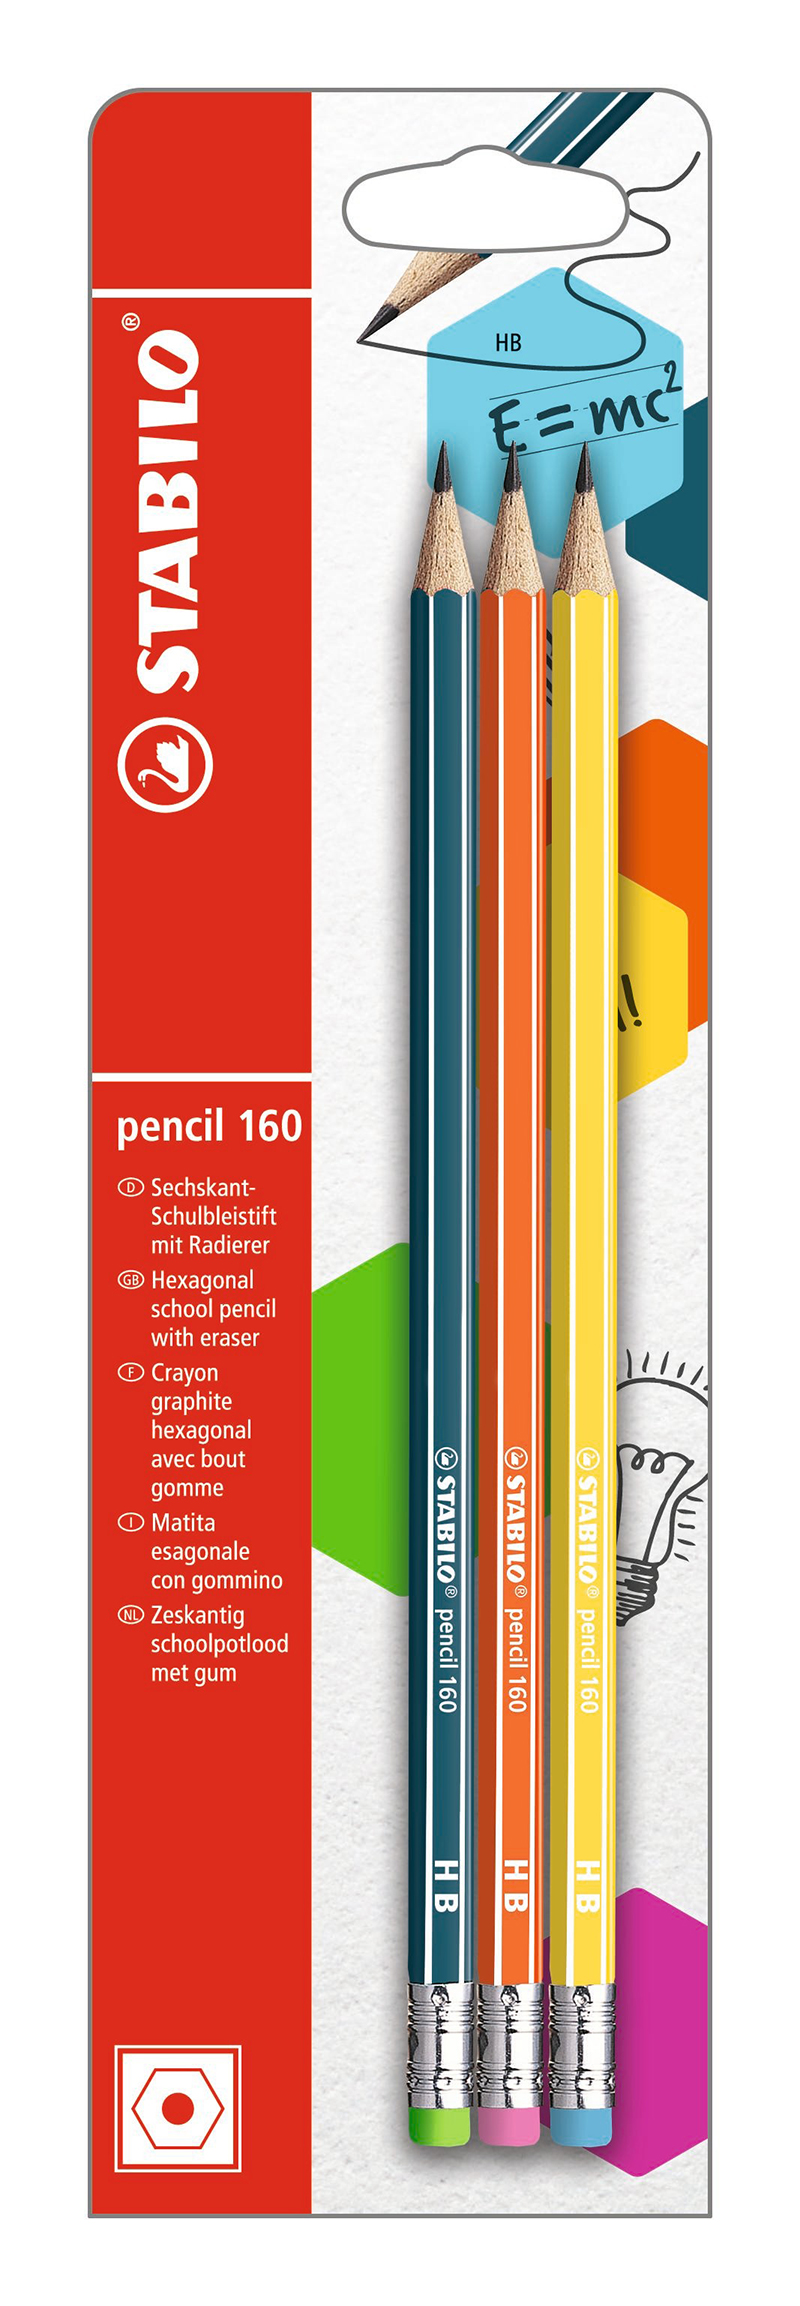 STABILO pencil 160 - 3 Crayons à papier - HB - embout gomme - couleurs assorties